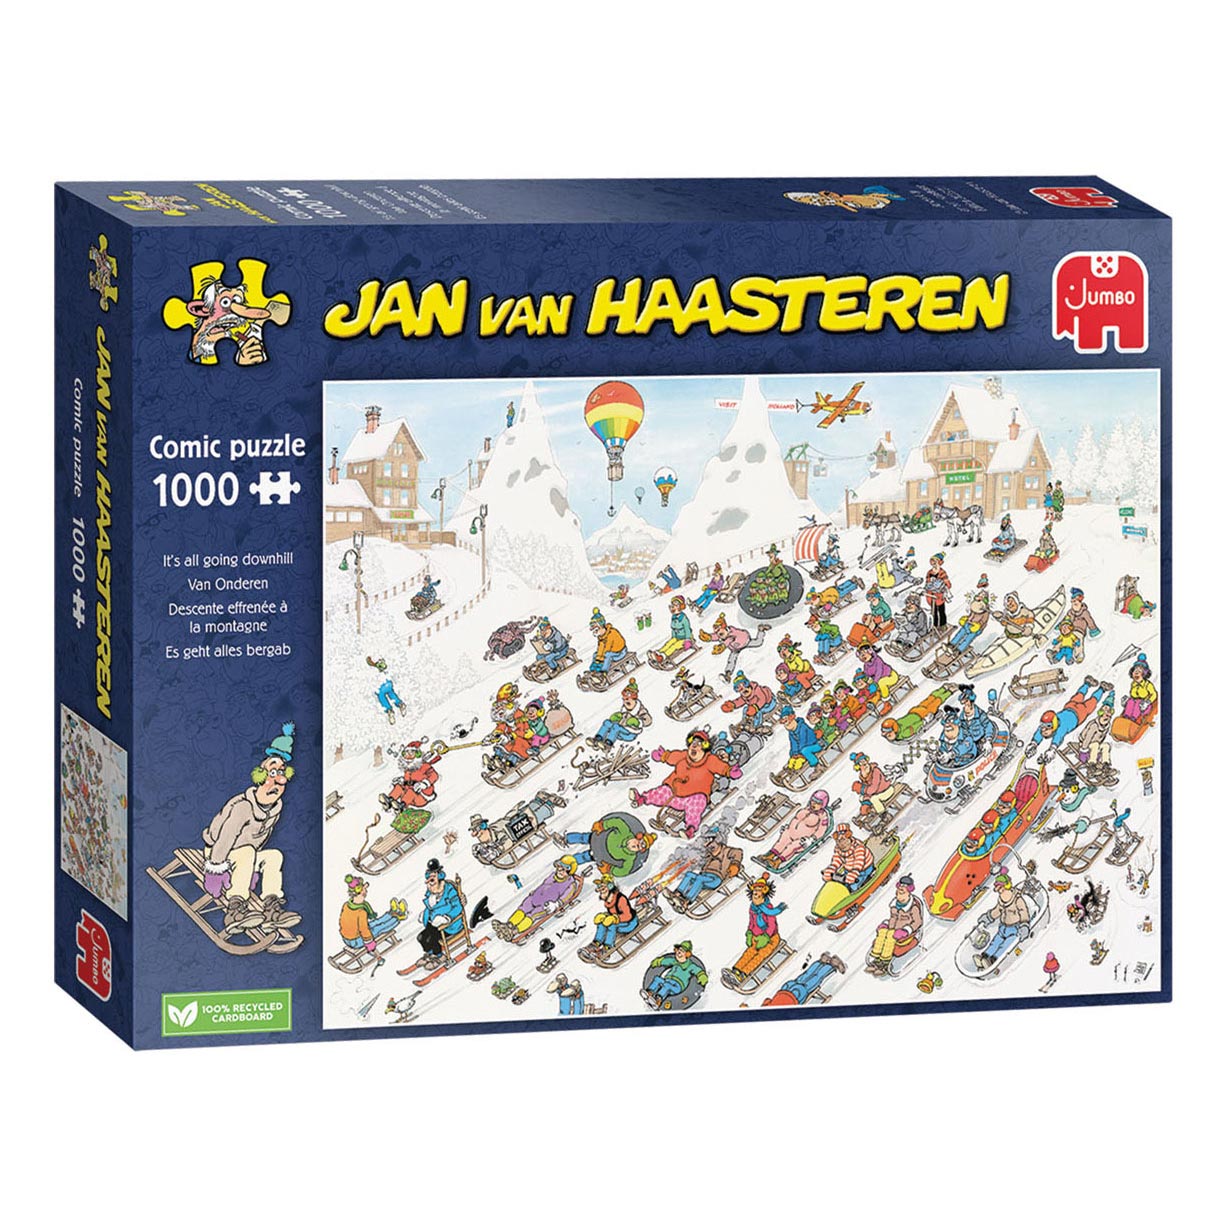 Jan van Haasteren - Van Onderen!, 1000 Stück.